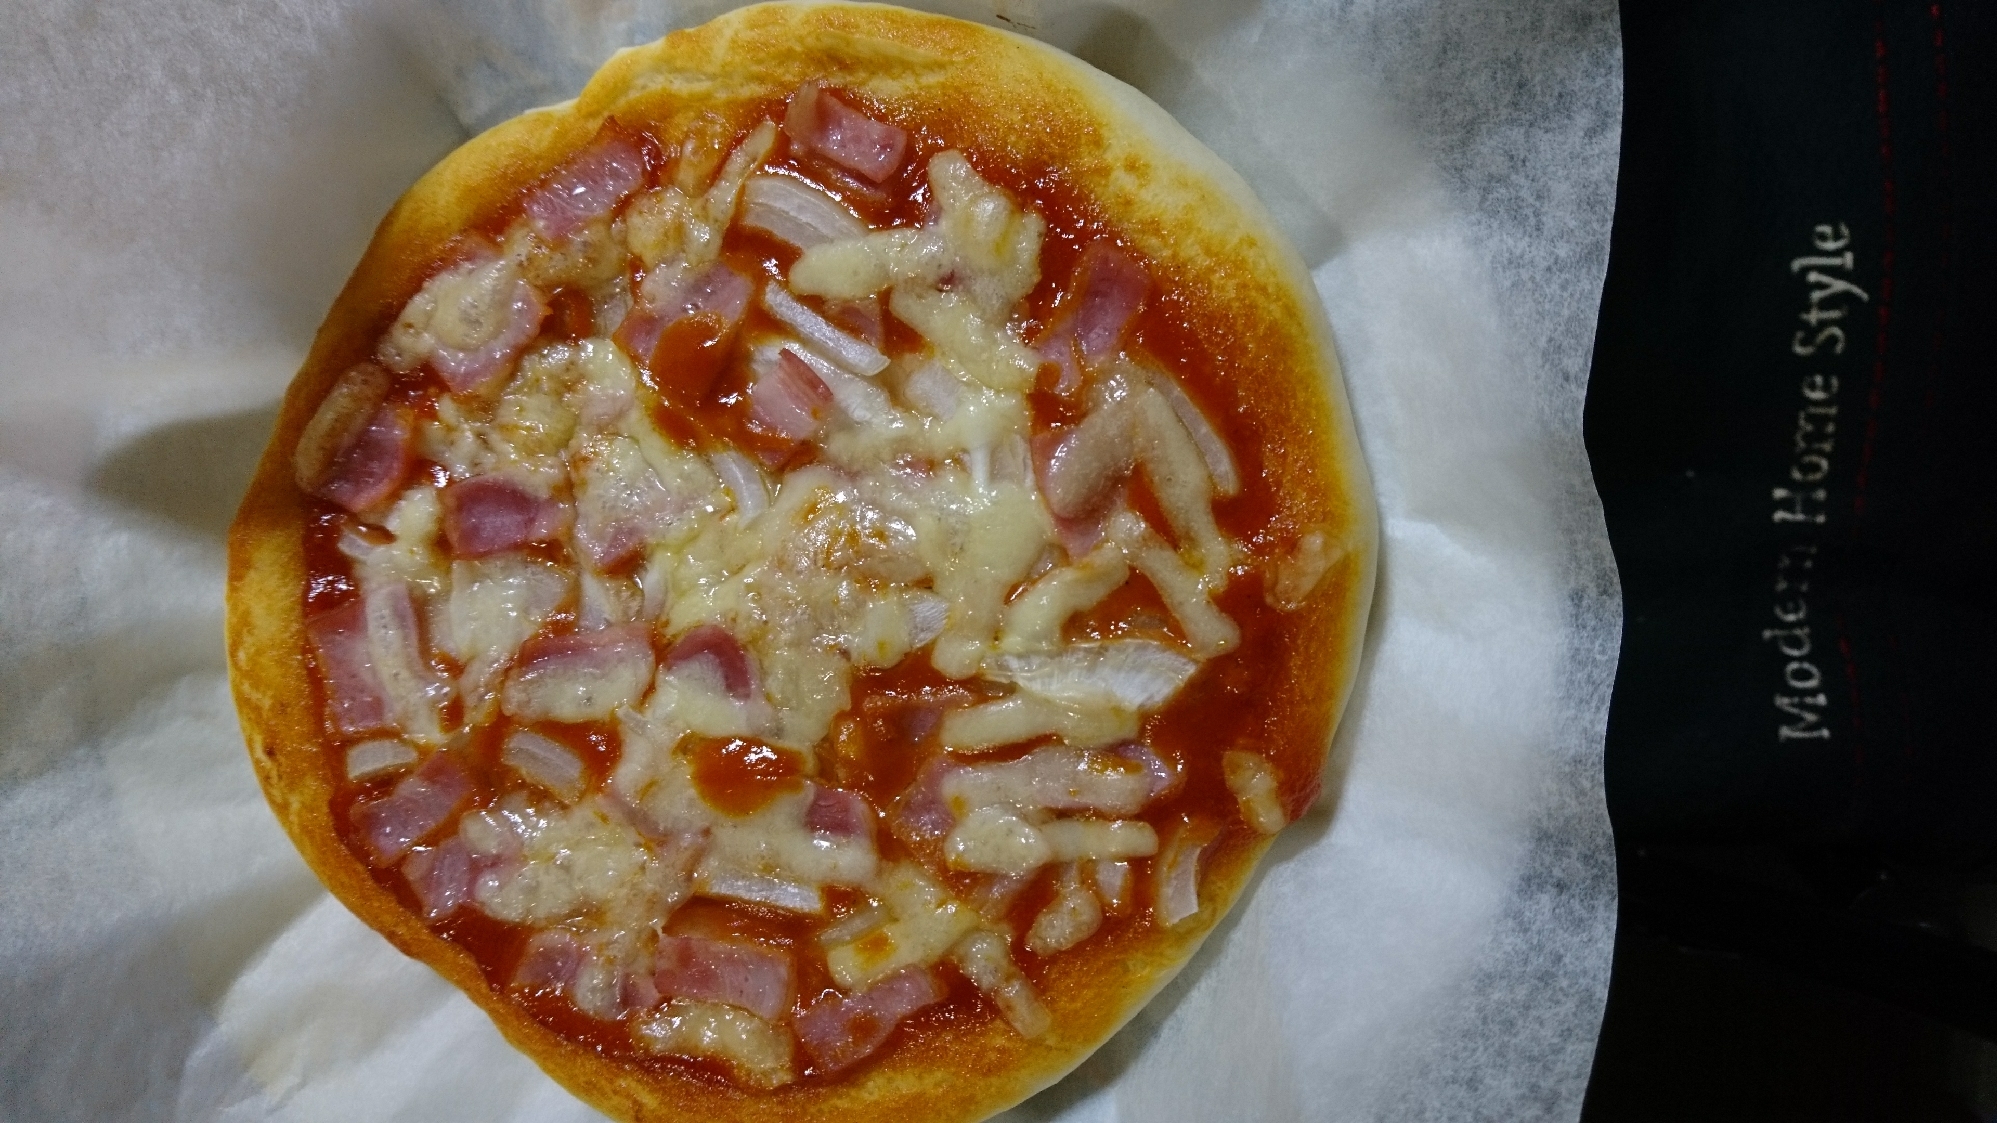 薄力粉で作るピザ